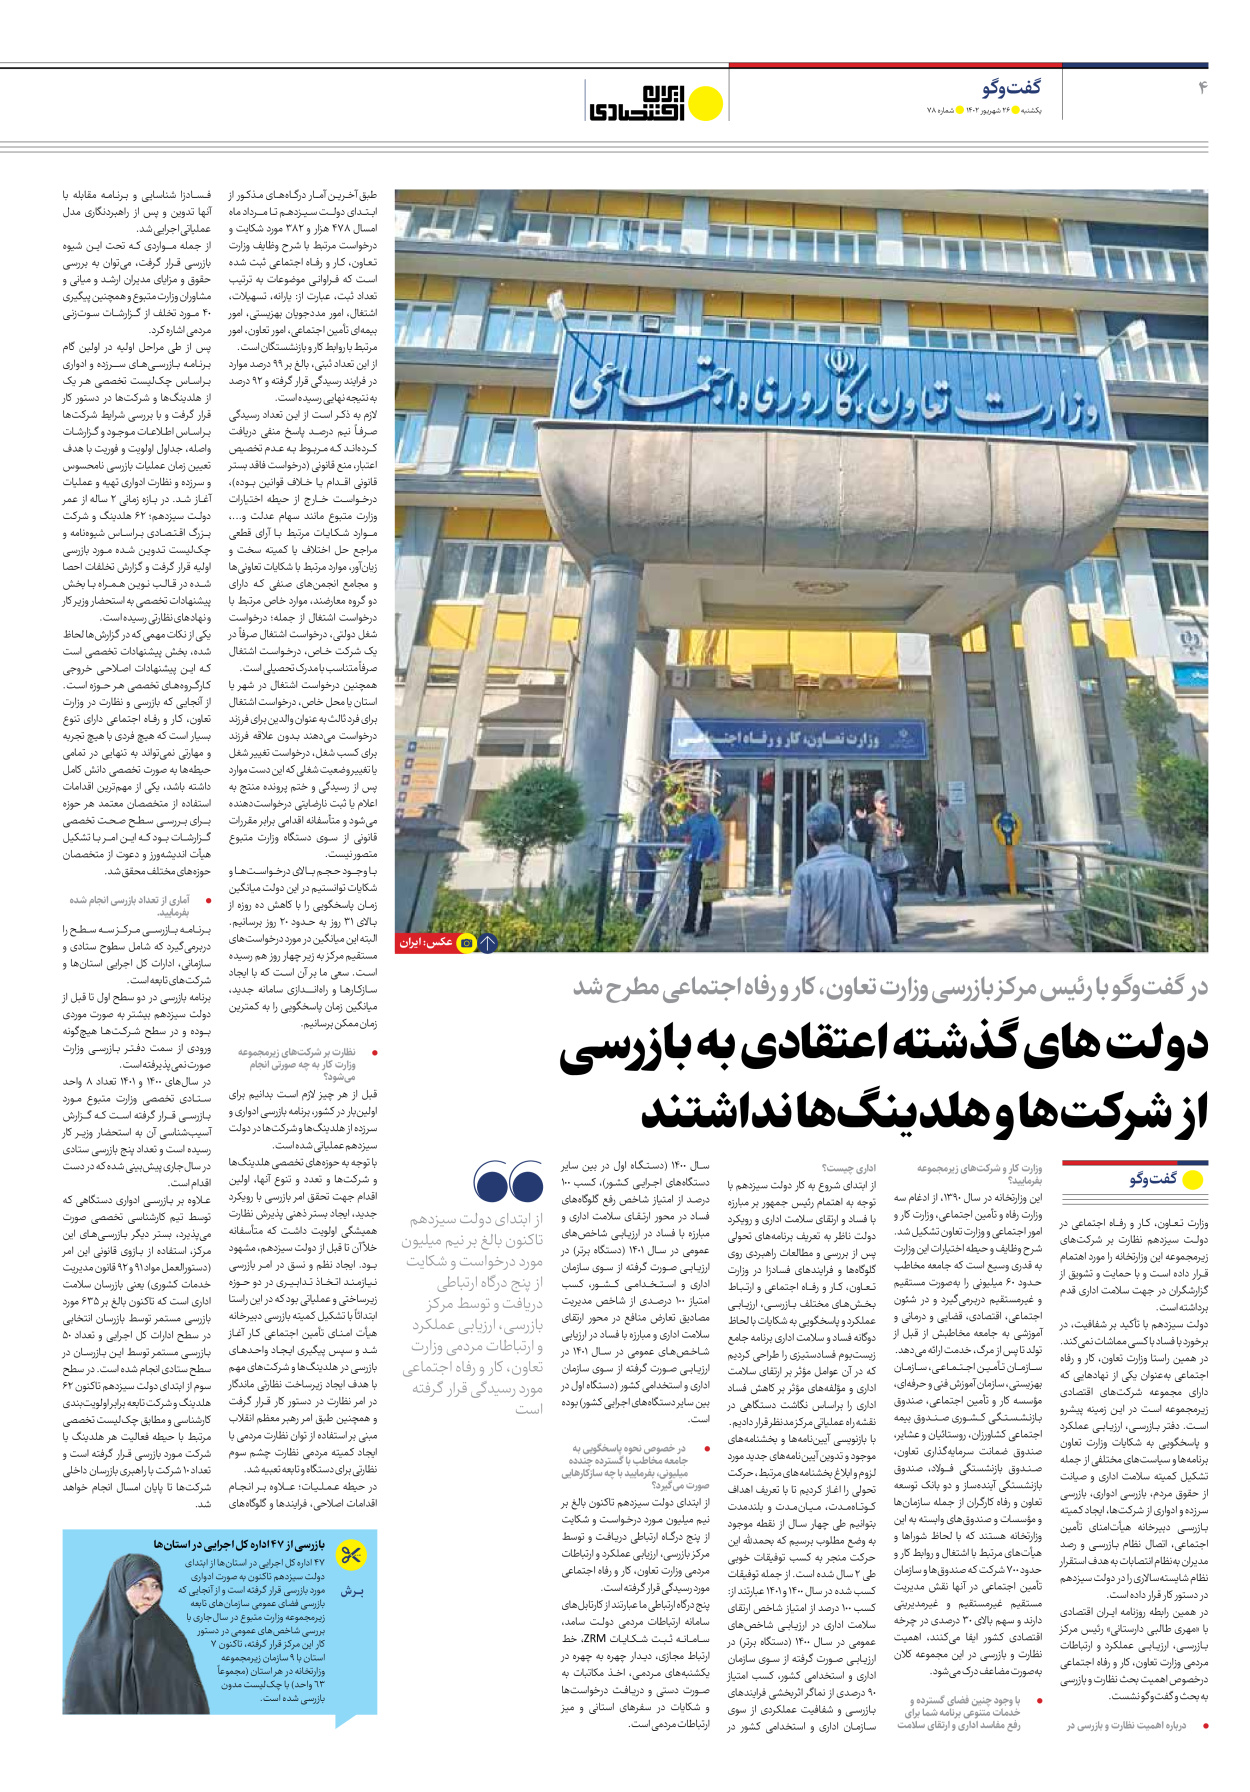 روزنامه ایران اقتصادی - شماره هفتاد و هشت - ۲۶ شهریور ۱۴۰۲ - صفحه ۴